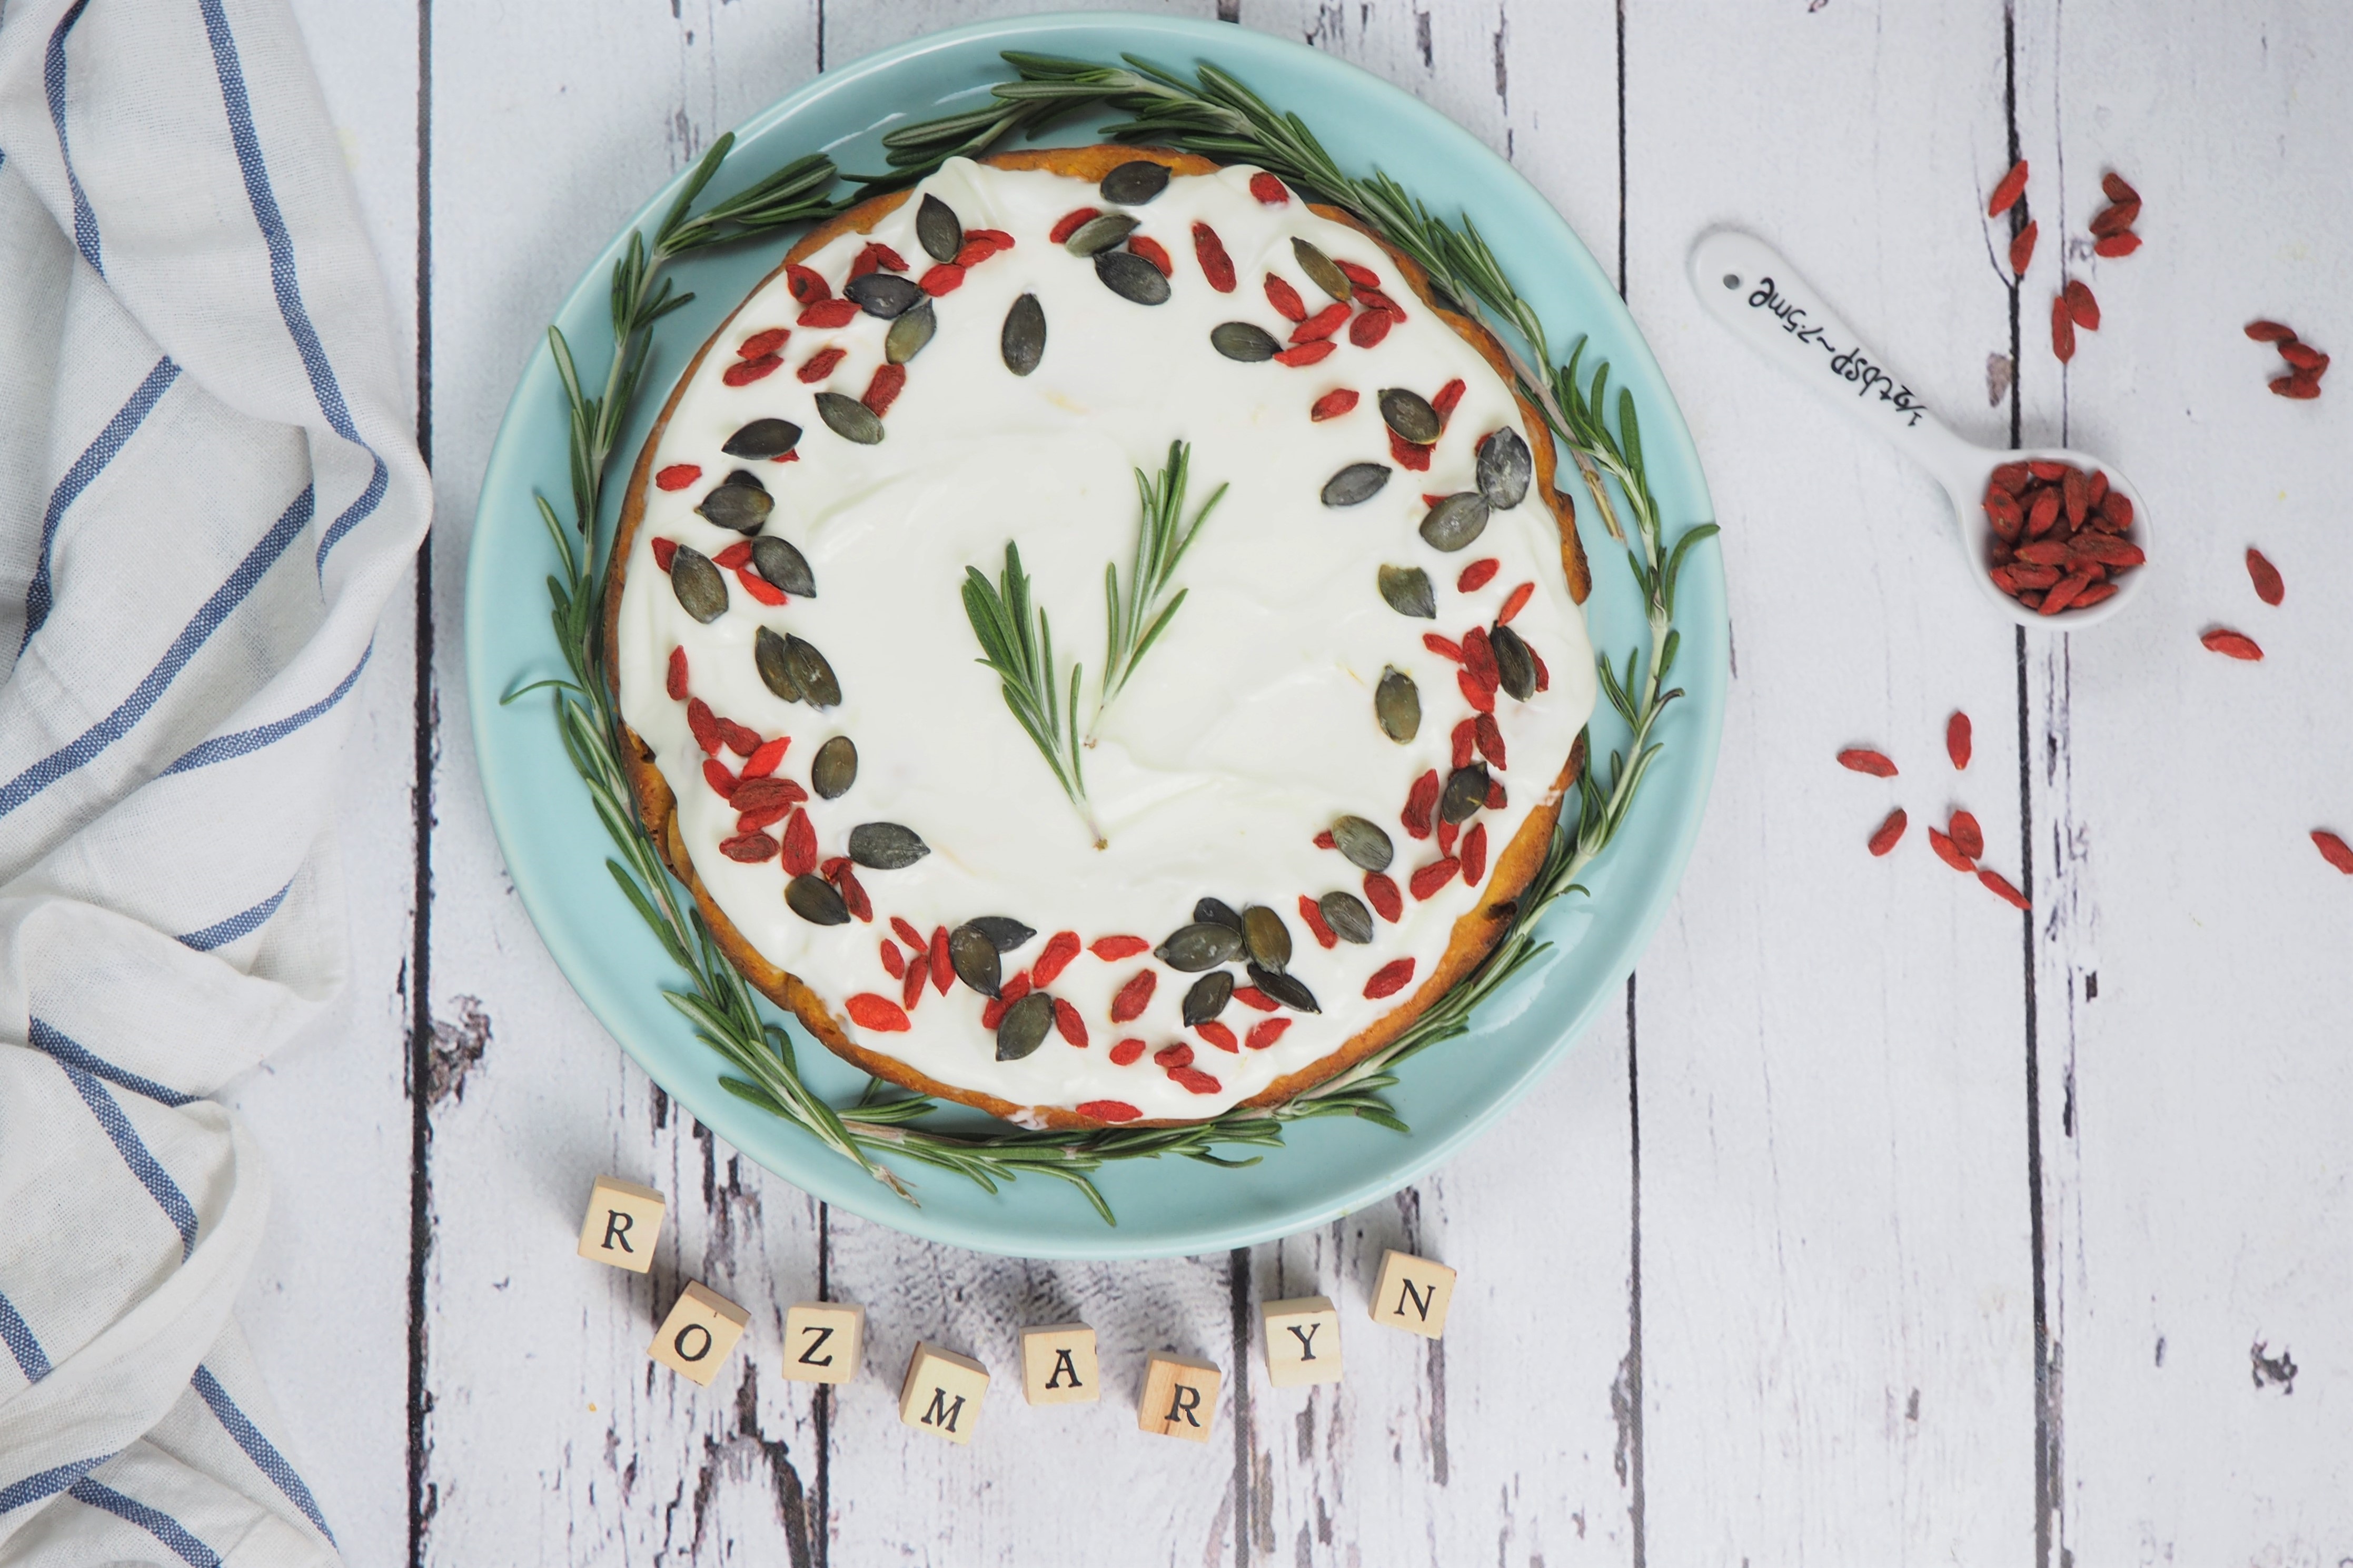 ciasto marchewkowe z jagodami goji i rozmarynem / rosemary carrot cake with goji berries